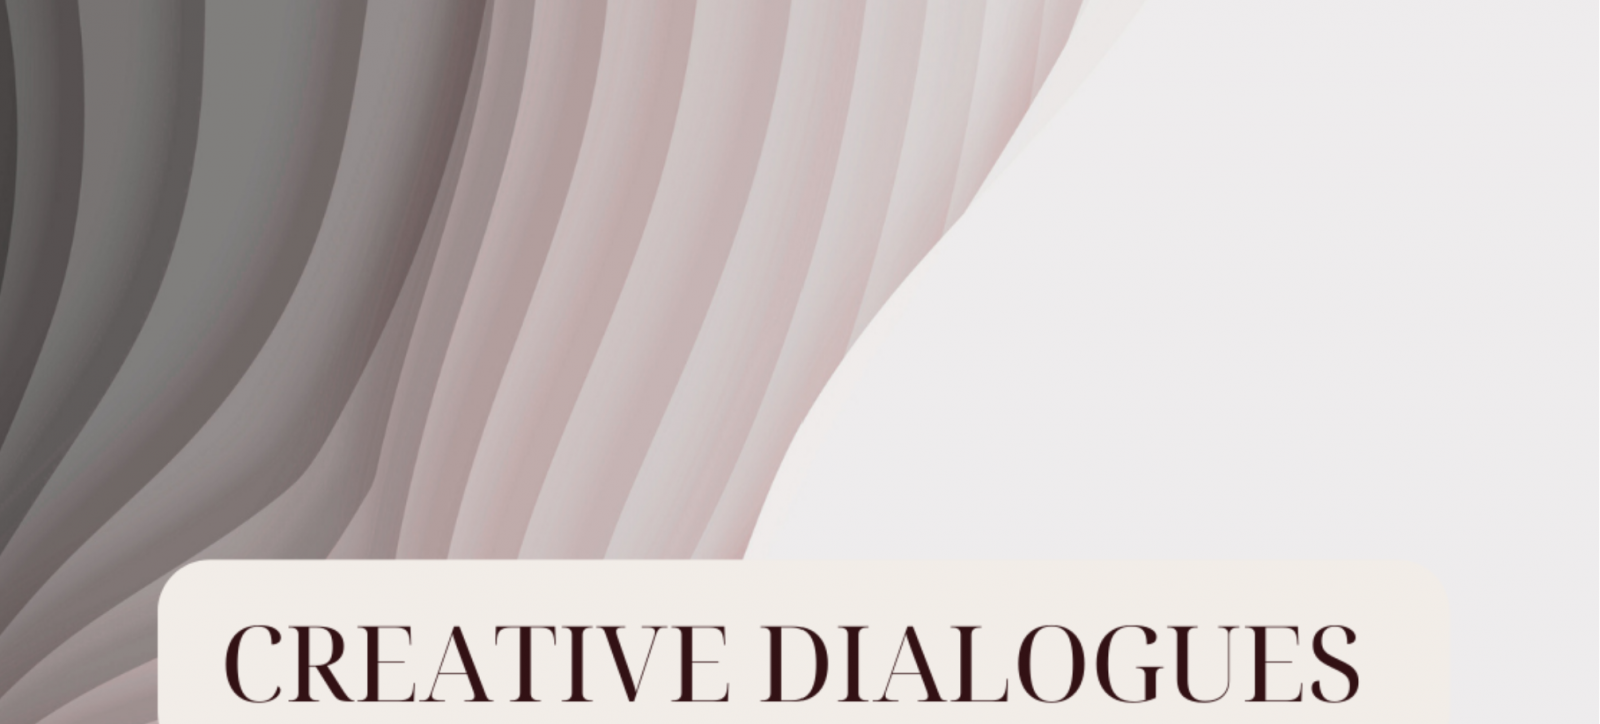 Creative Dialogues Kick-off